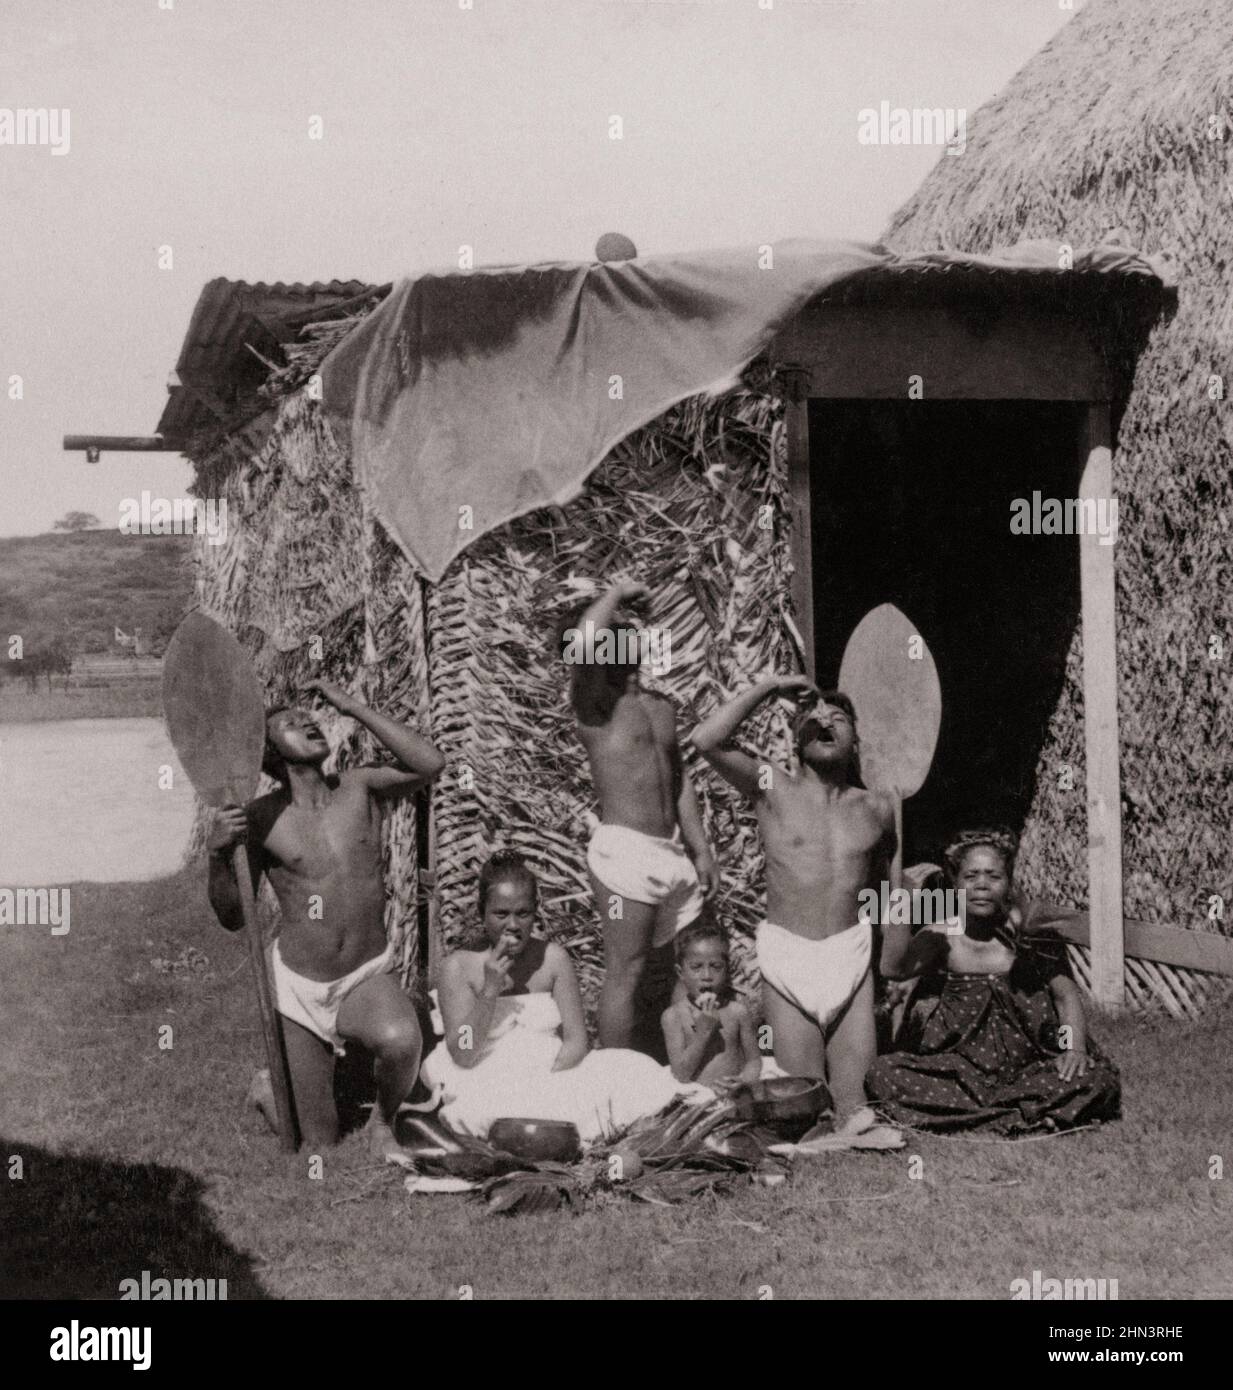 Foto d'epoca del gruppo di nativi Kanaka Maoli mangiare poi, Isole Hawaiiane (di fronte al rifugio erboso). 1896 nativi hawaiani sono la Polinesia indigena Foto Stock